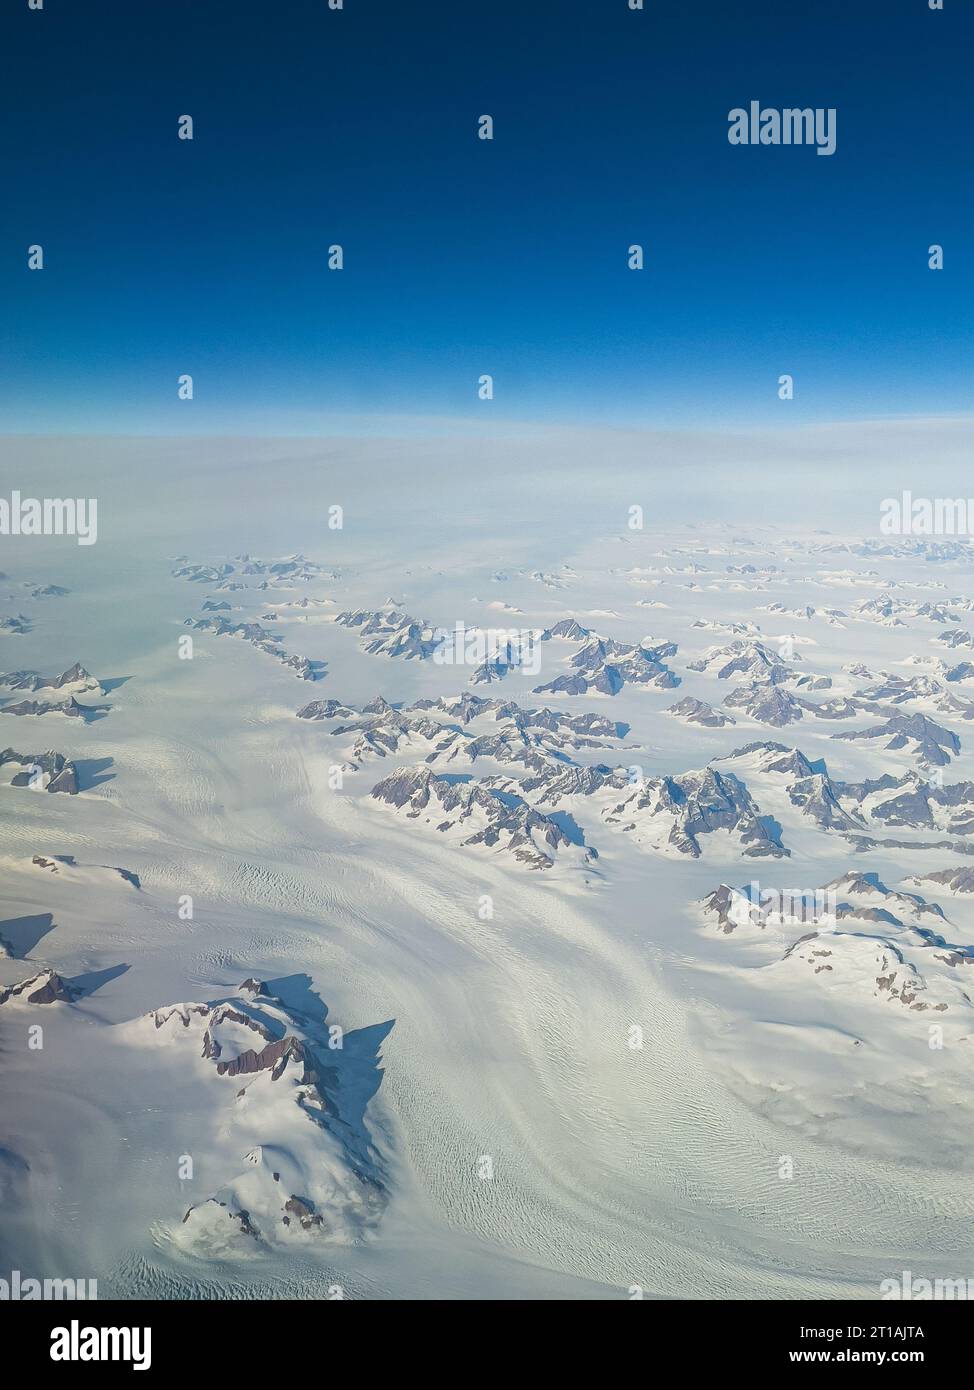 Unglaubliche Aussicht von einer Ebene ausgedehnter Schneefelder und Berggipfel Grönlands an einem sonnigen Tag mit blauem Himmel am Horizont Stockfoto